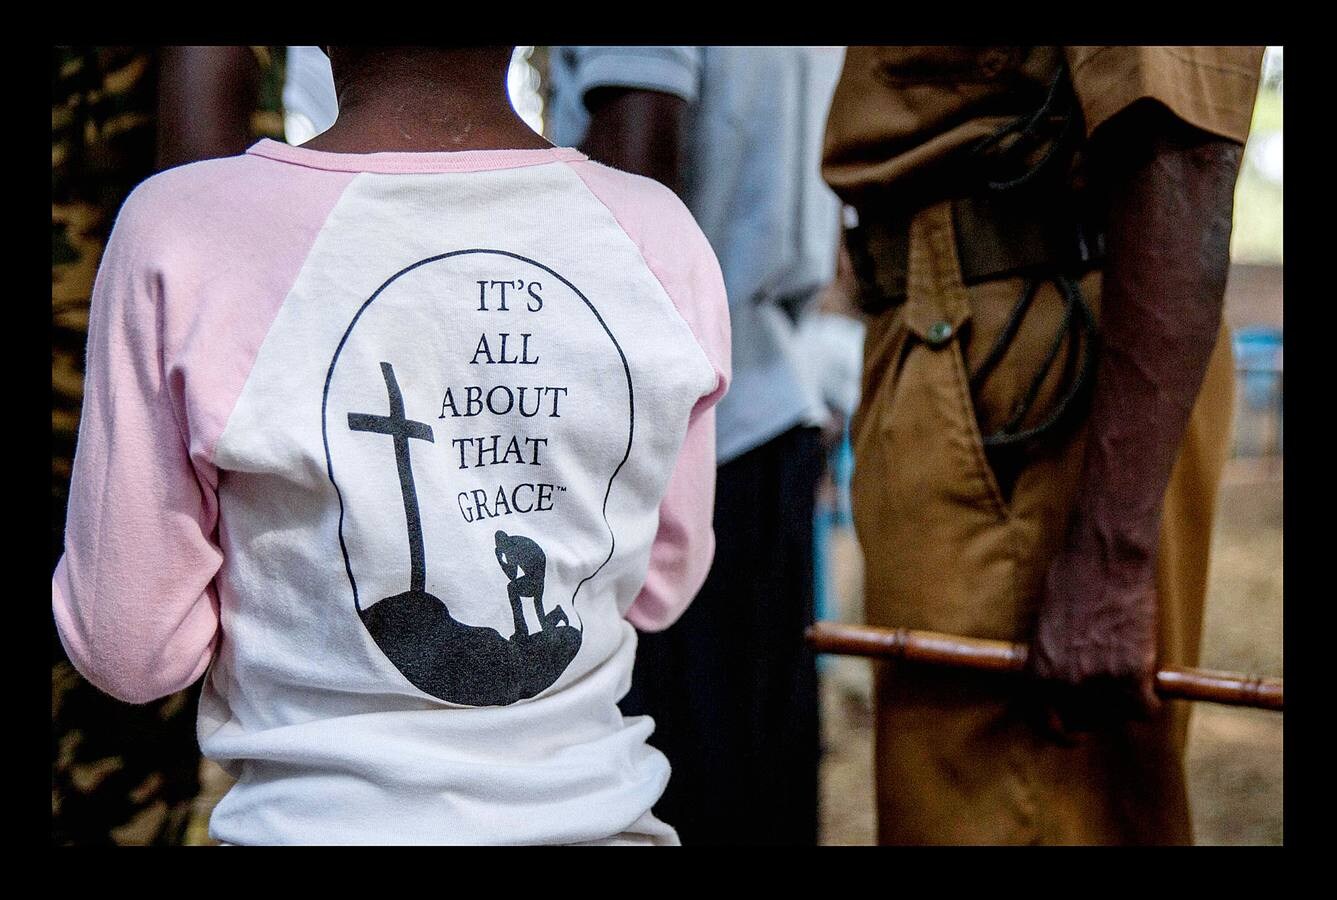 Más de 300 niños soldados, incluidas 87 niñas, han sido liberados en la región de Yambio, devastada por la guerra de Sudán del Sur, como parte de un programa destinado a ayudar a reintegrarlos en la sociedad. El conflicto en Sudán del Sur, un nuevo país surgido de la independencia de Sudán en 2011, se inició dos años después de la escisión, ha causado la muerte a decenas de miles de personas y ha generado el desarraigo de más de cuatro millones. El programa de integración en Yambio (las fotografías muestran la ceremonia de liberación en esa localidad, al sur del país), tiene como objetivo ayudar a más de 700 niños soldados para que regresen a la vida normal.